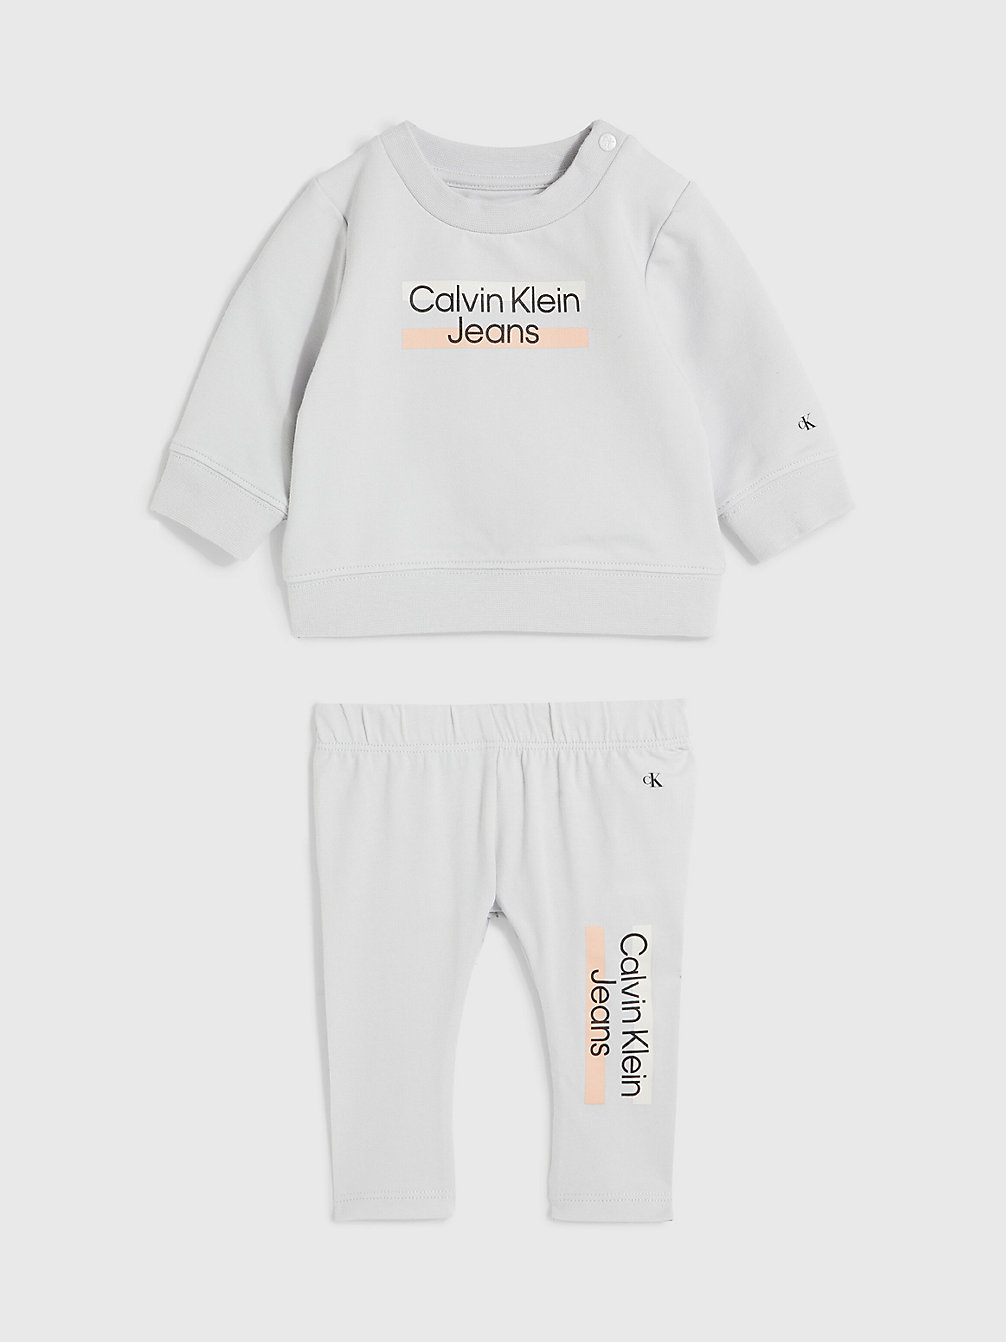 GHOST GREY > Logo-Trainingsanzug Für Babys > undefined newborn - Calvin Klein